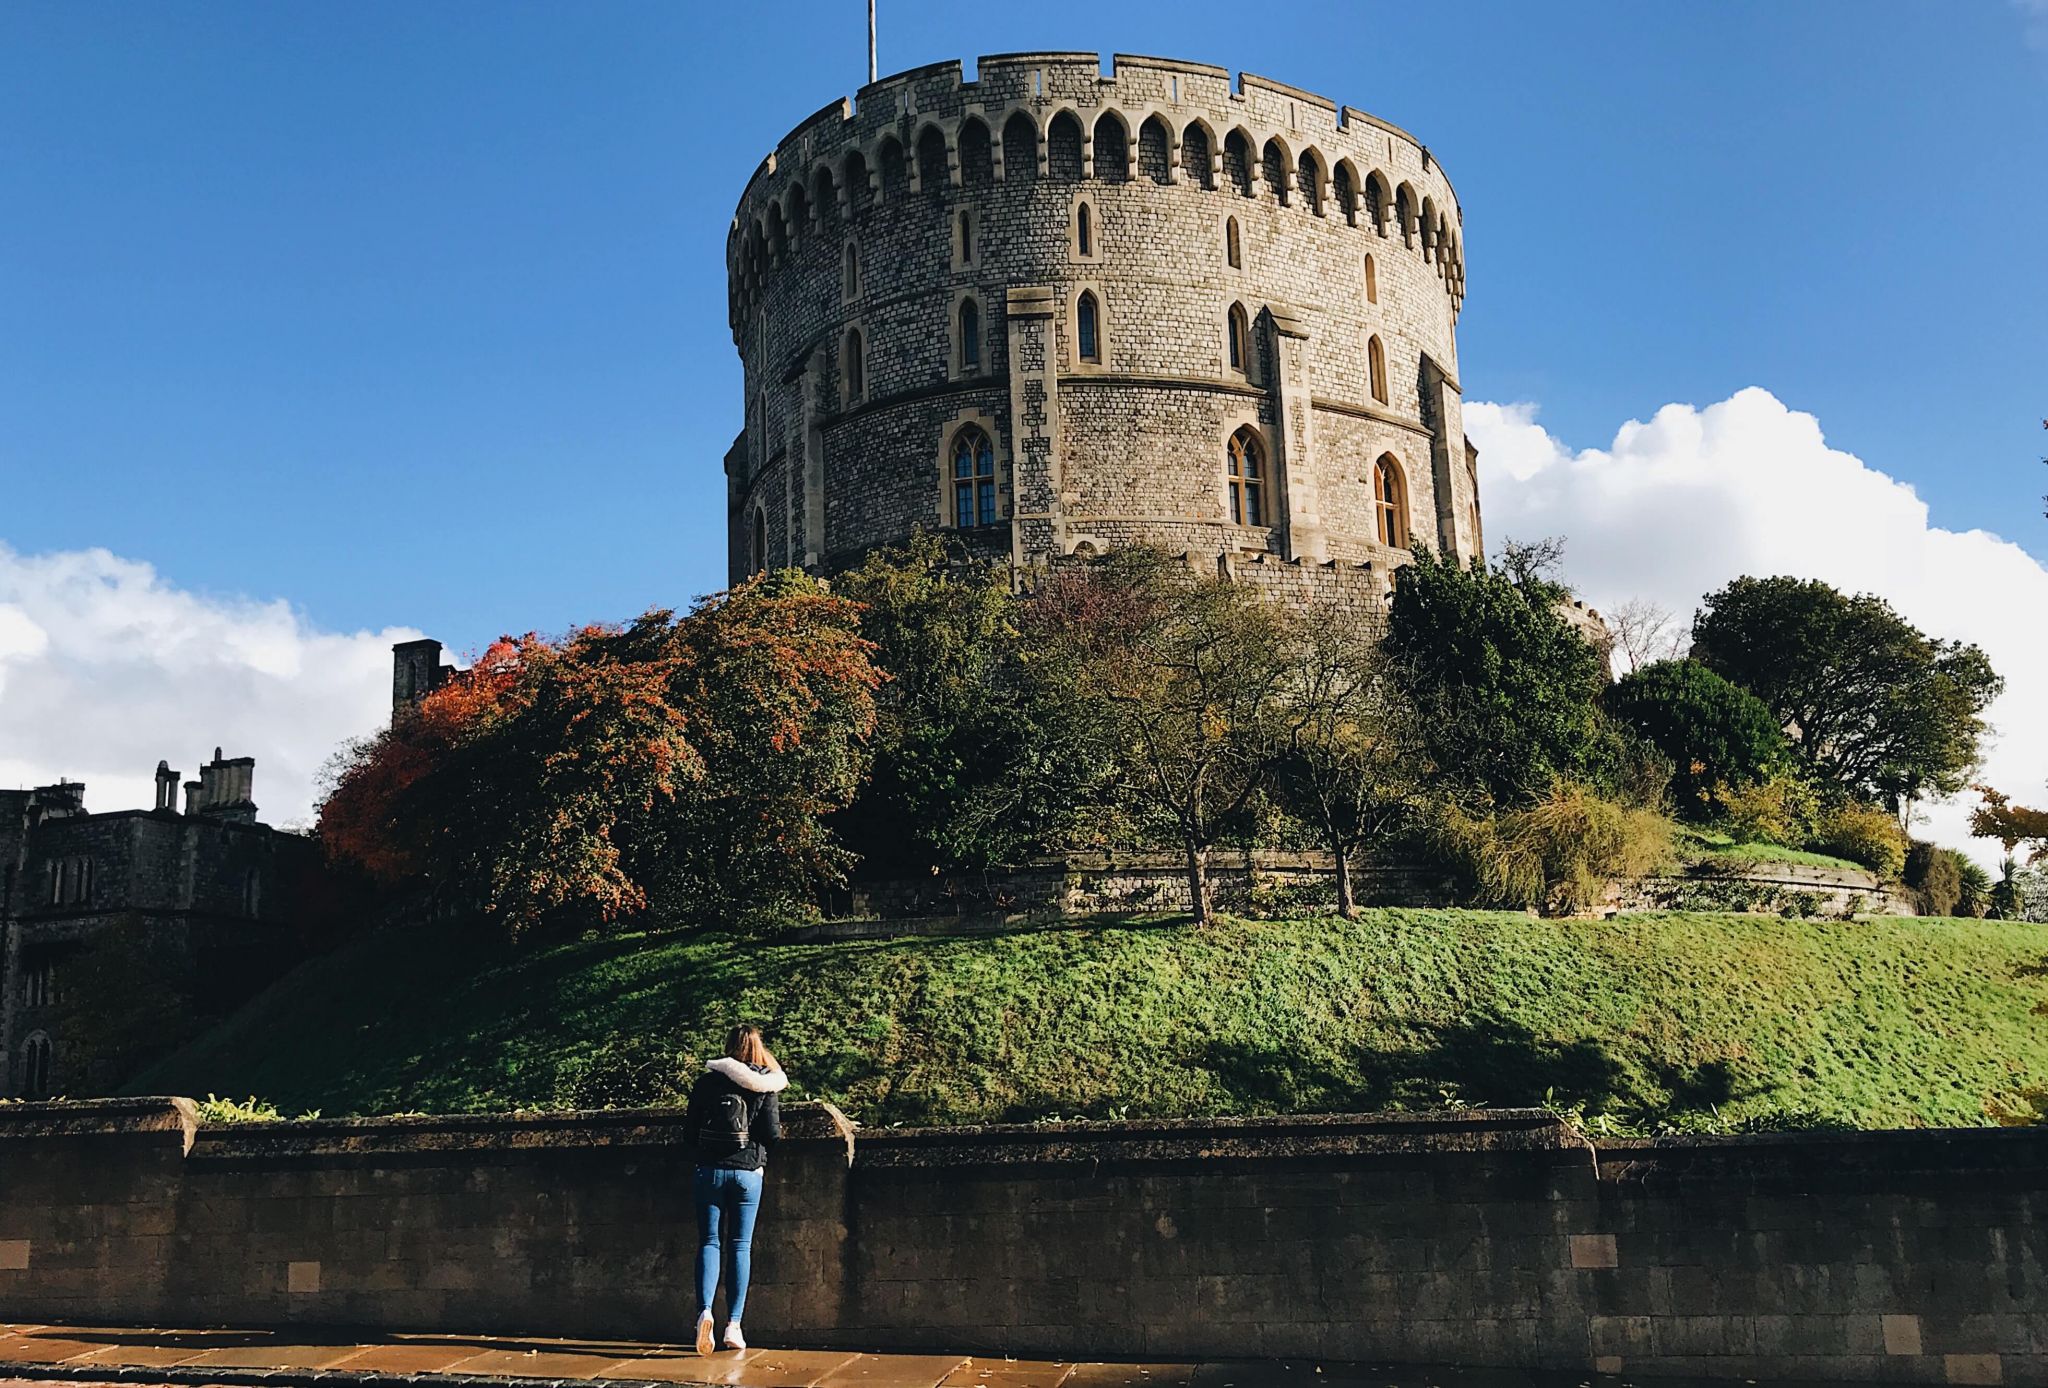 Excursion d'une journée au château de Windsor (la tour ronde) à Windsor